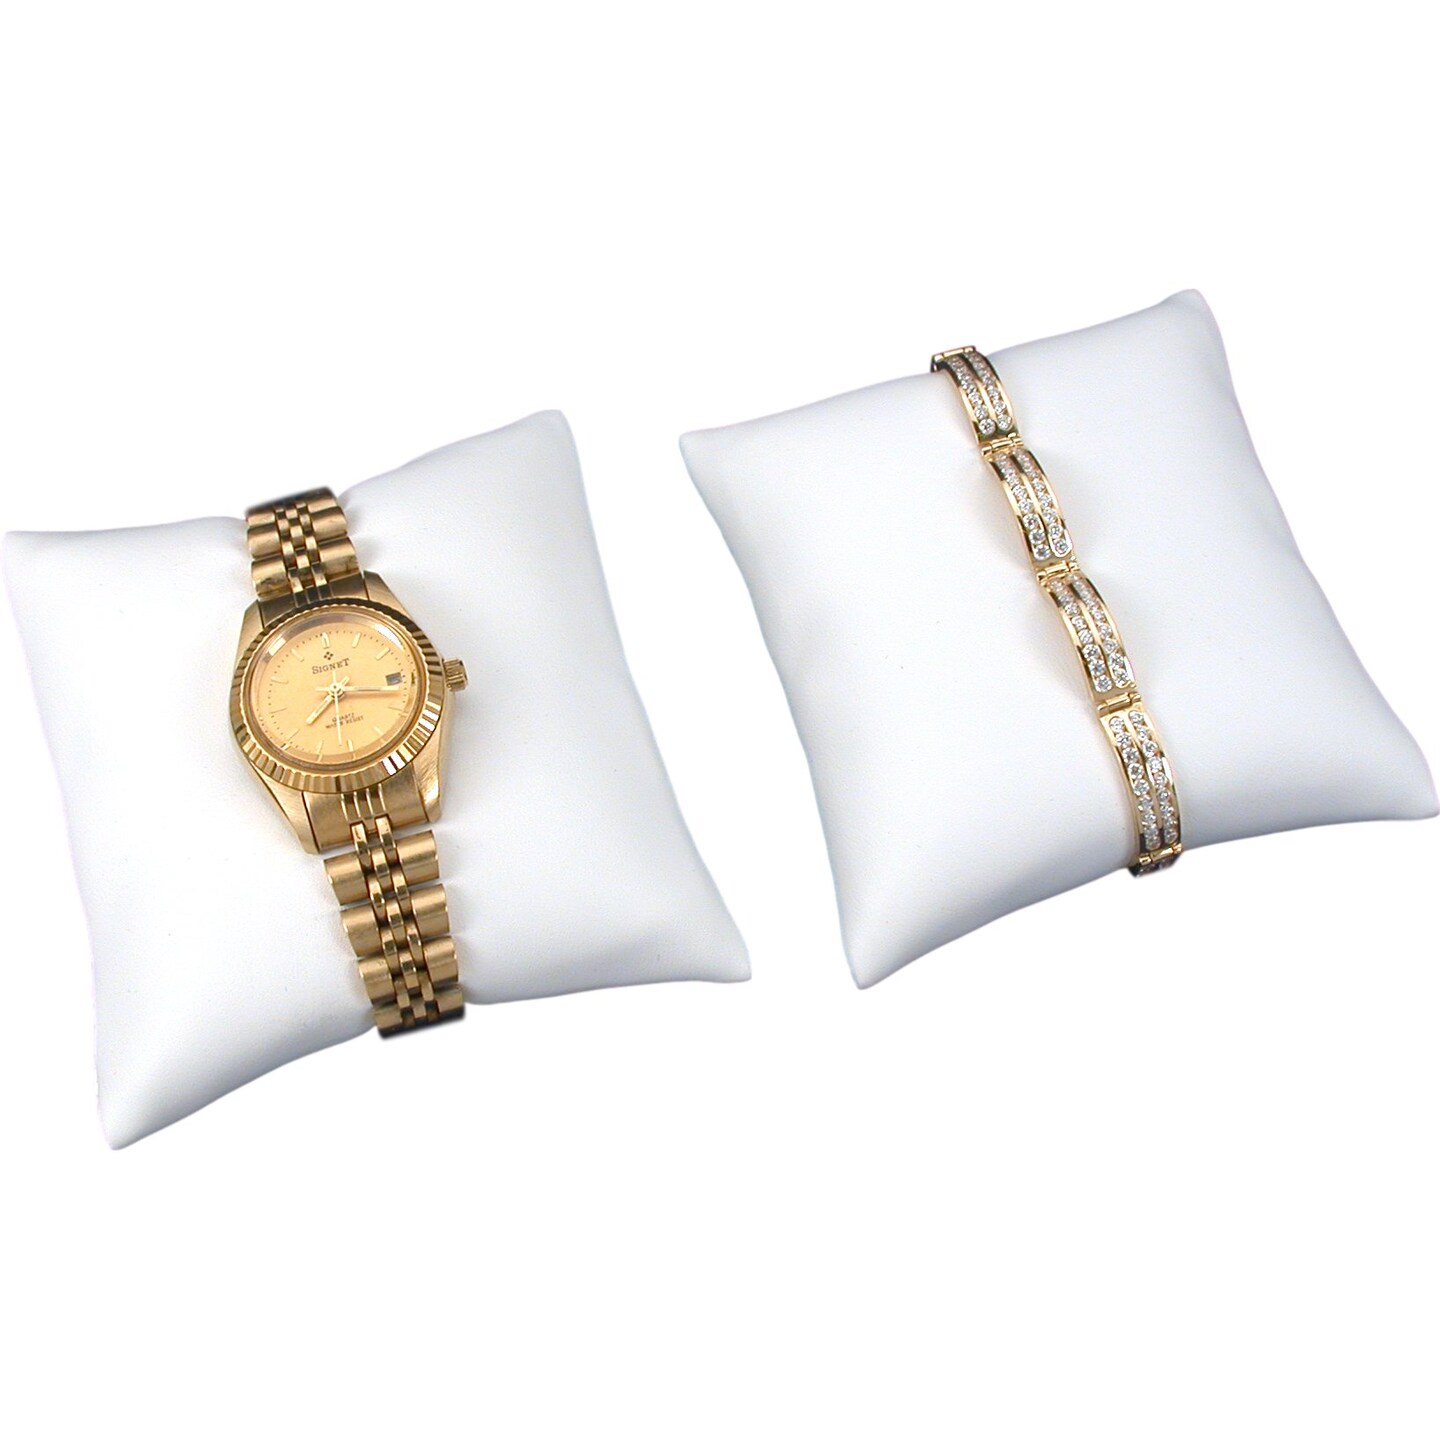 2 White Leather Bracelet Watch Pillow Jewelry Displays 3&#x22;